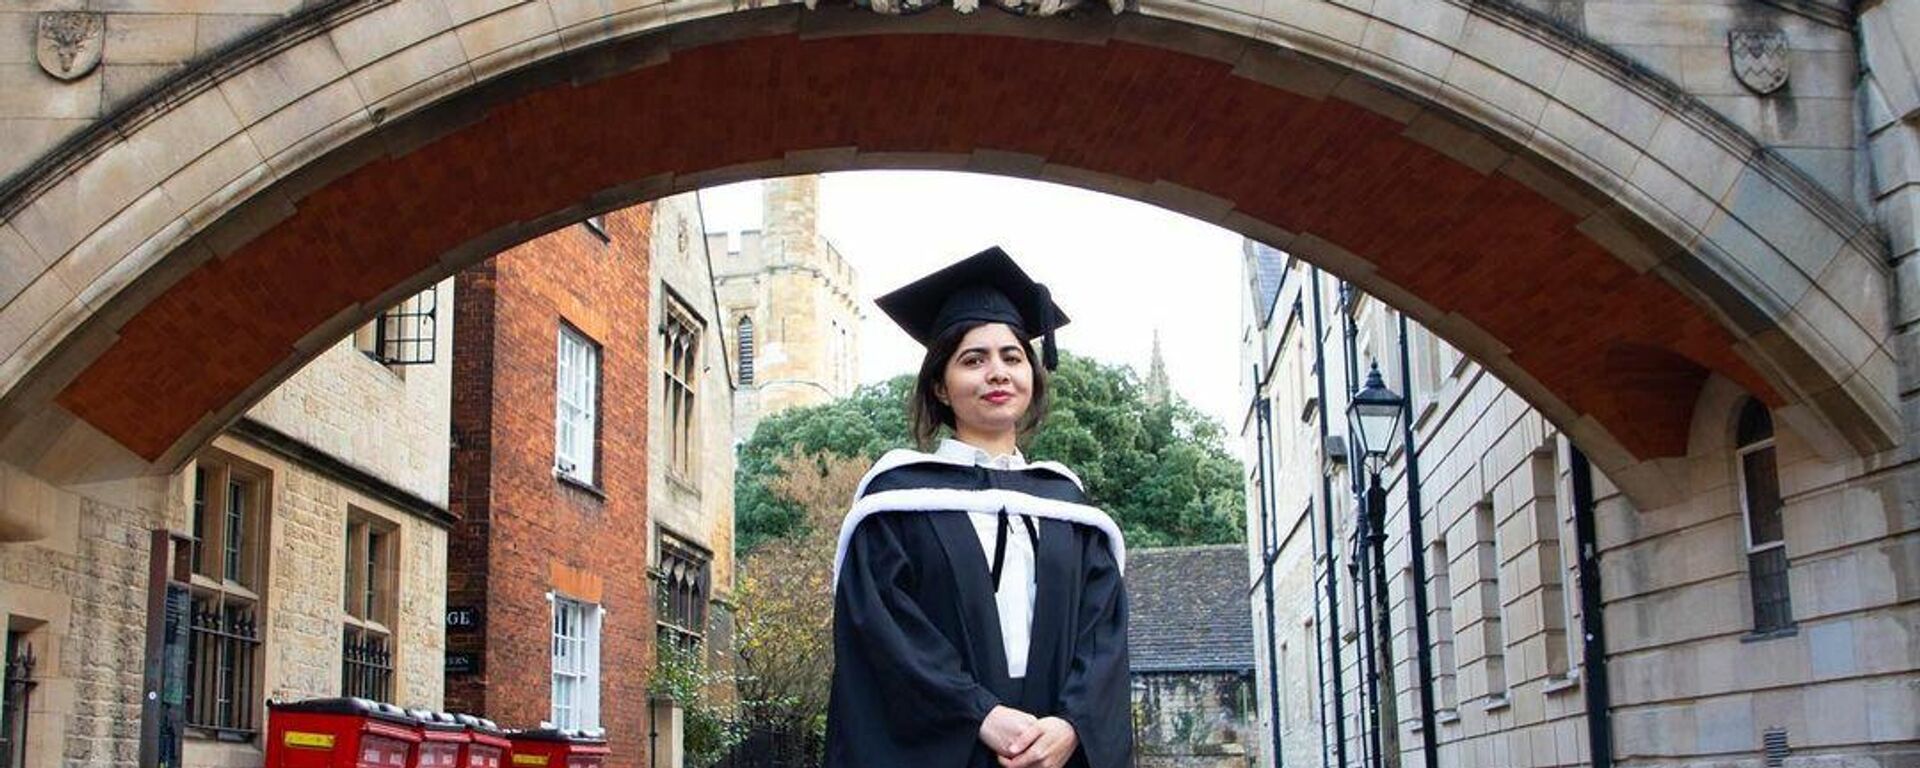 Malala Yusufzay, Oxford Üniversitesi'nden felsefe, siyaset ve ekonomi derecesiyle mezun olmasına dair fotoğrafları sosyal medyada paylaştı. - Sputnik Türkiye, 1920, 28.11.2021